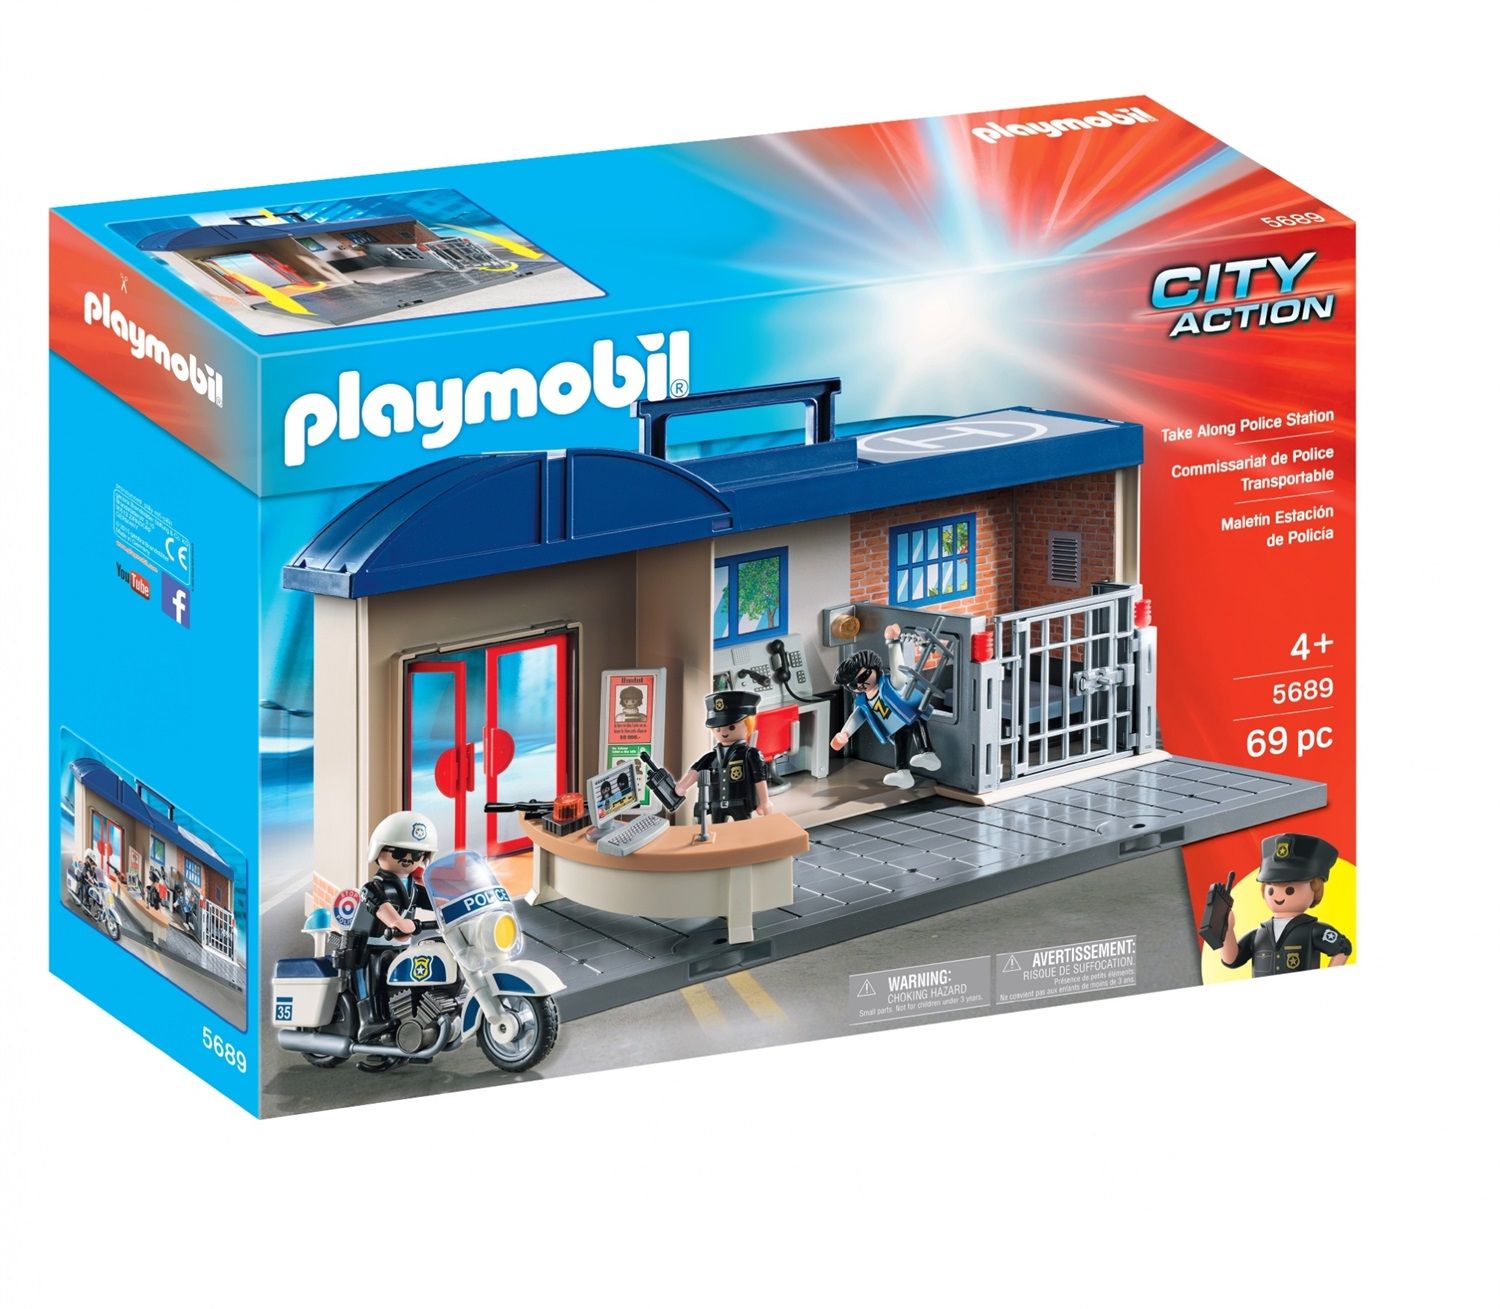 stazione di polizia playmobil